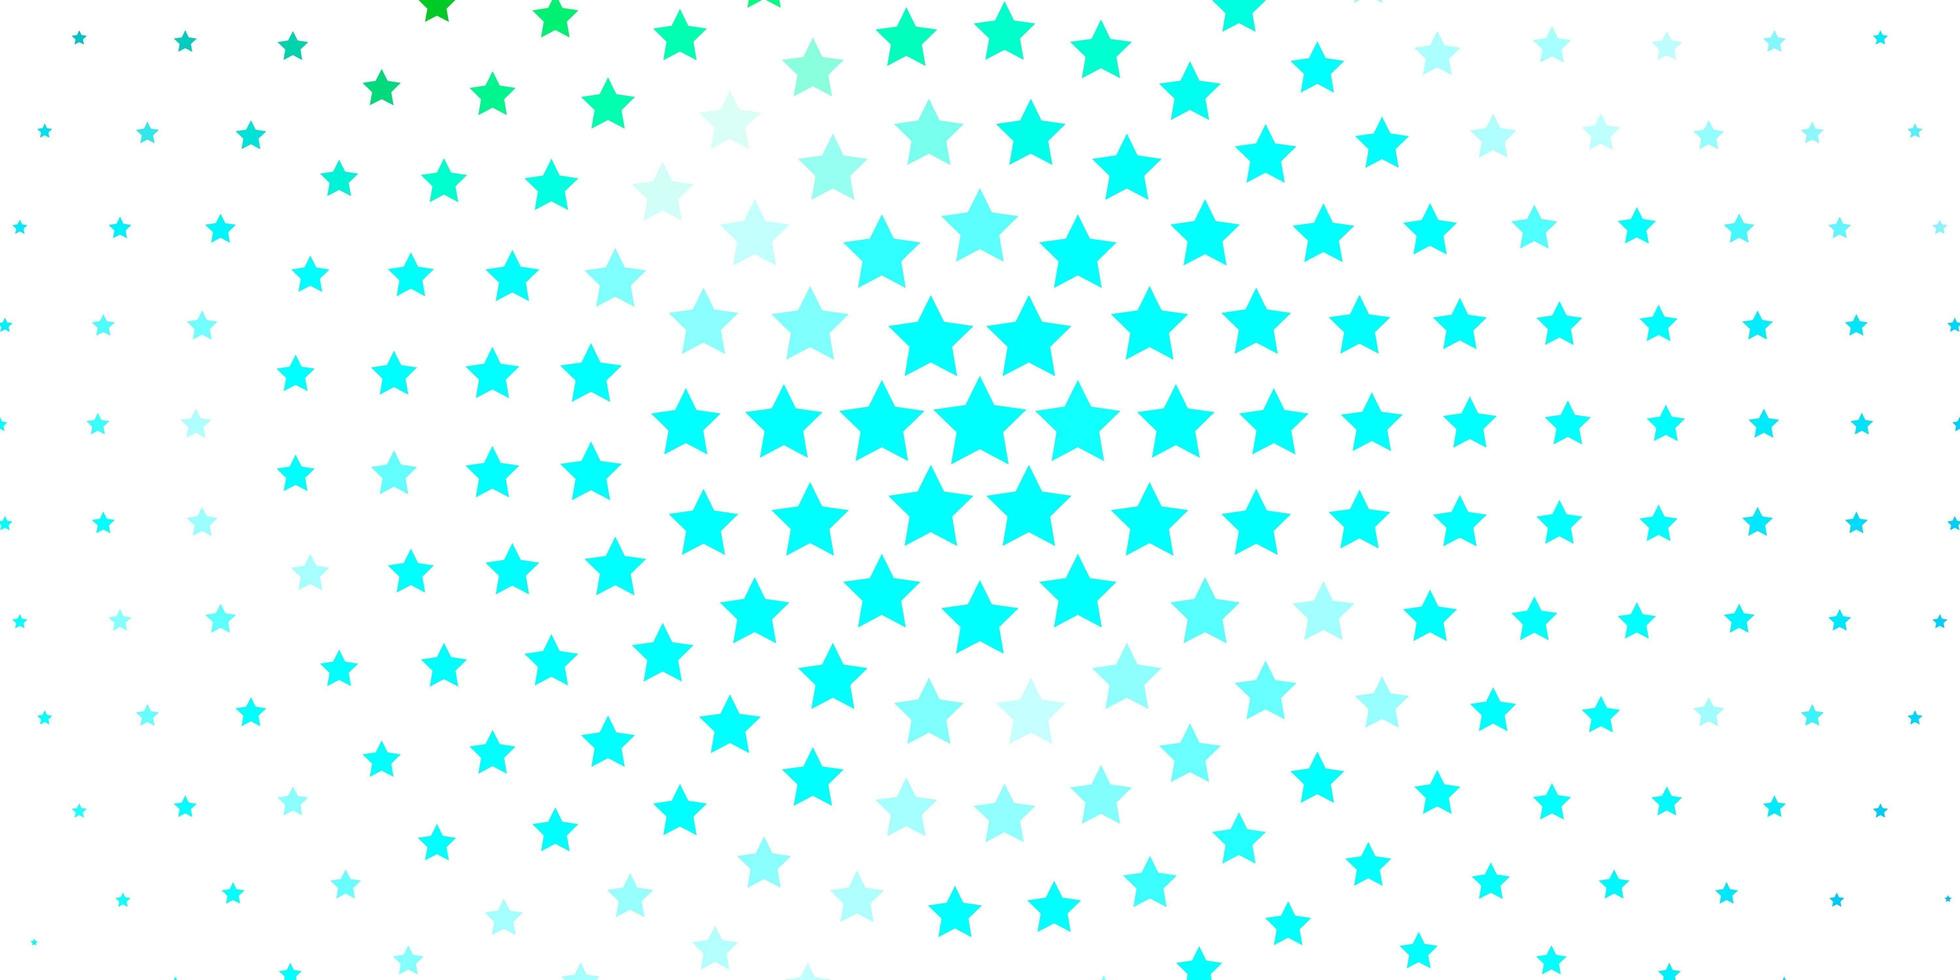 patrón de vector azul claro, verde con estrellas abstractas.